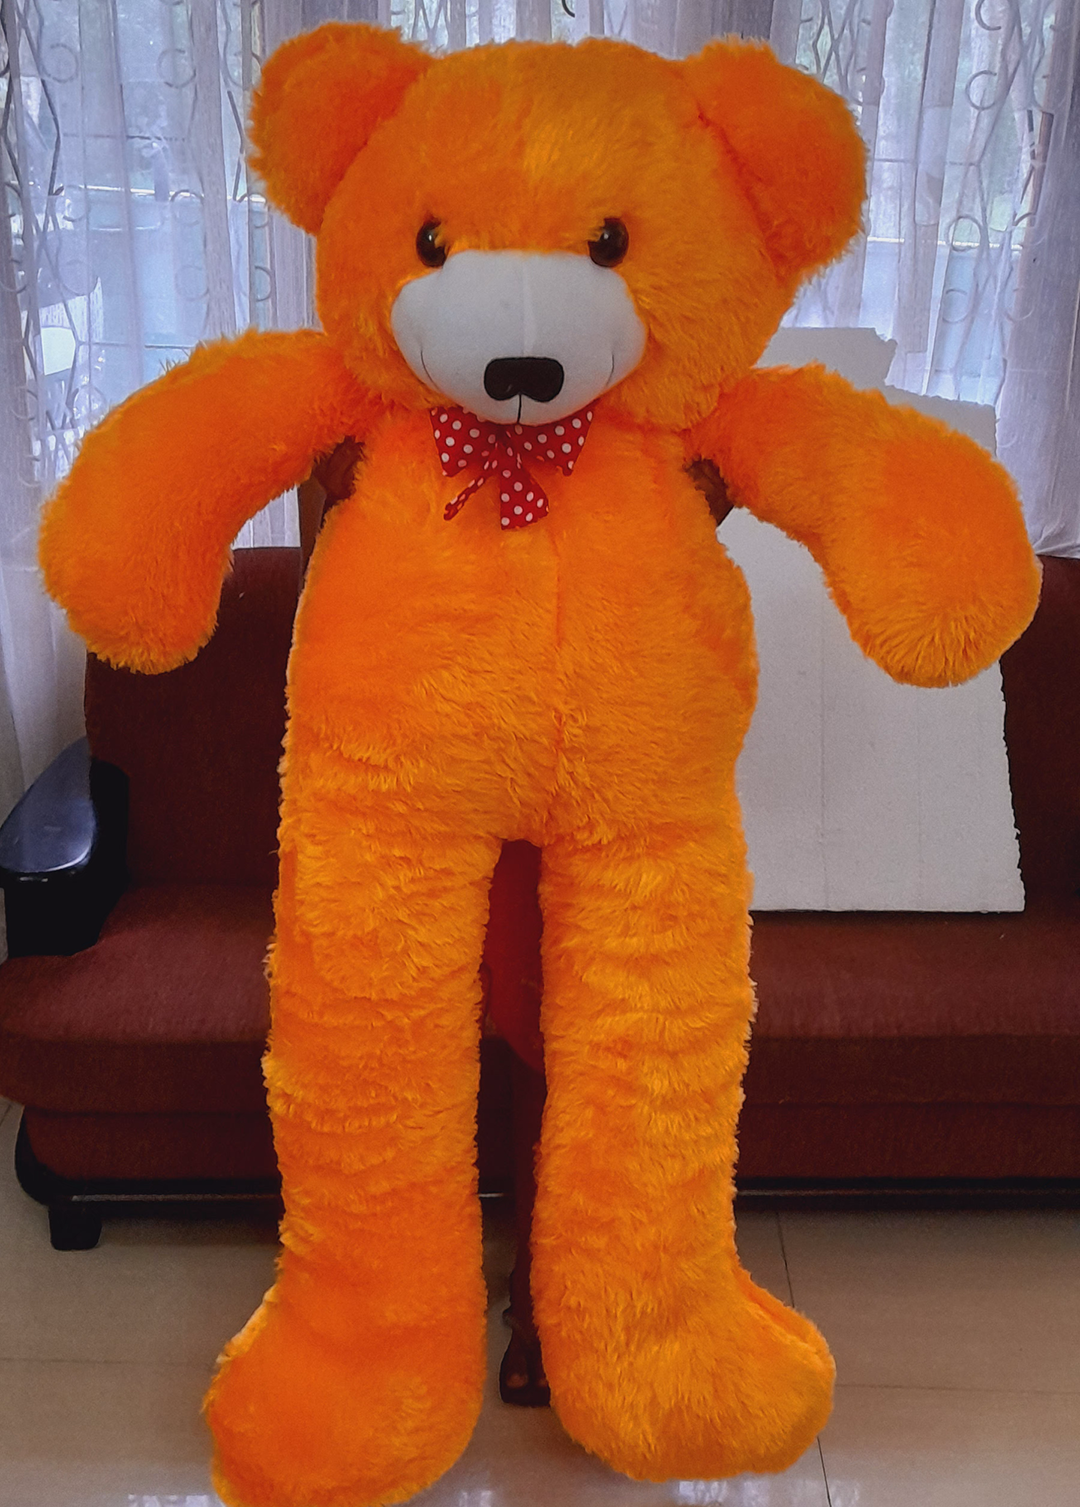 Giant Teddy Bear 5ft yaluyalu